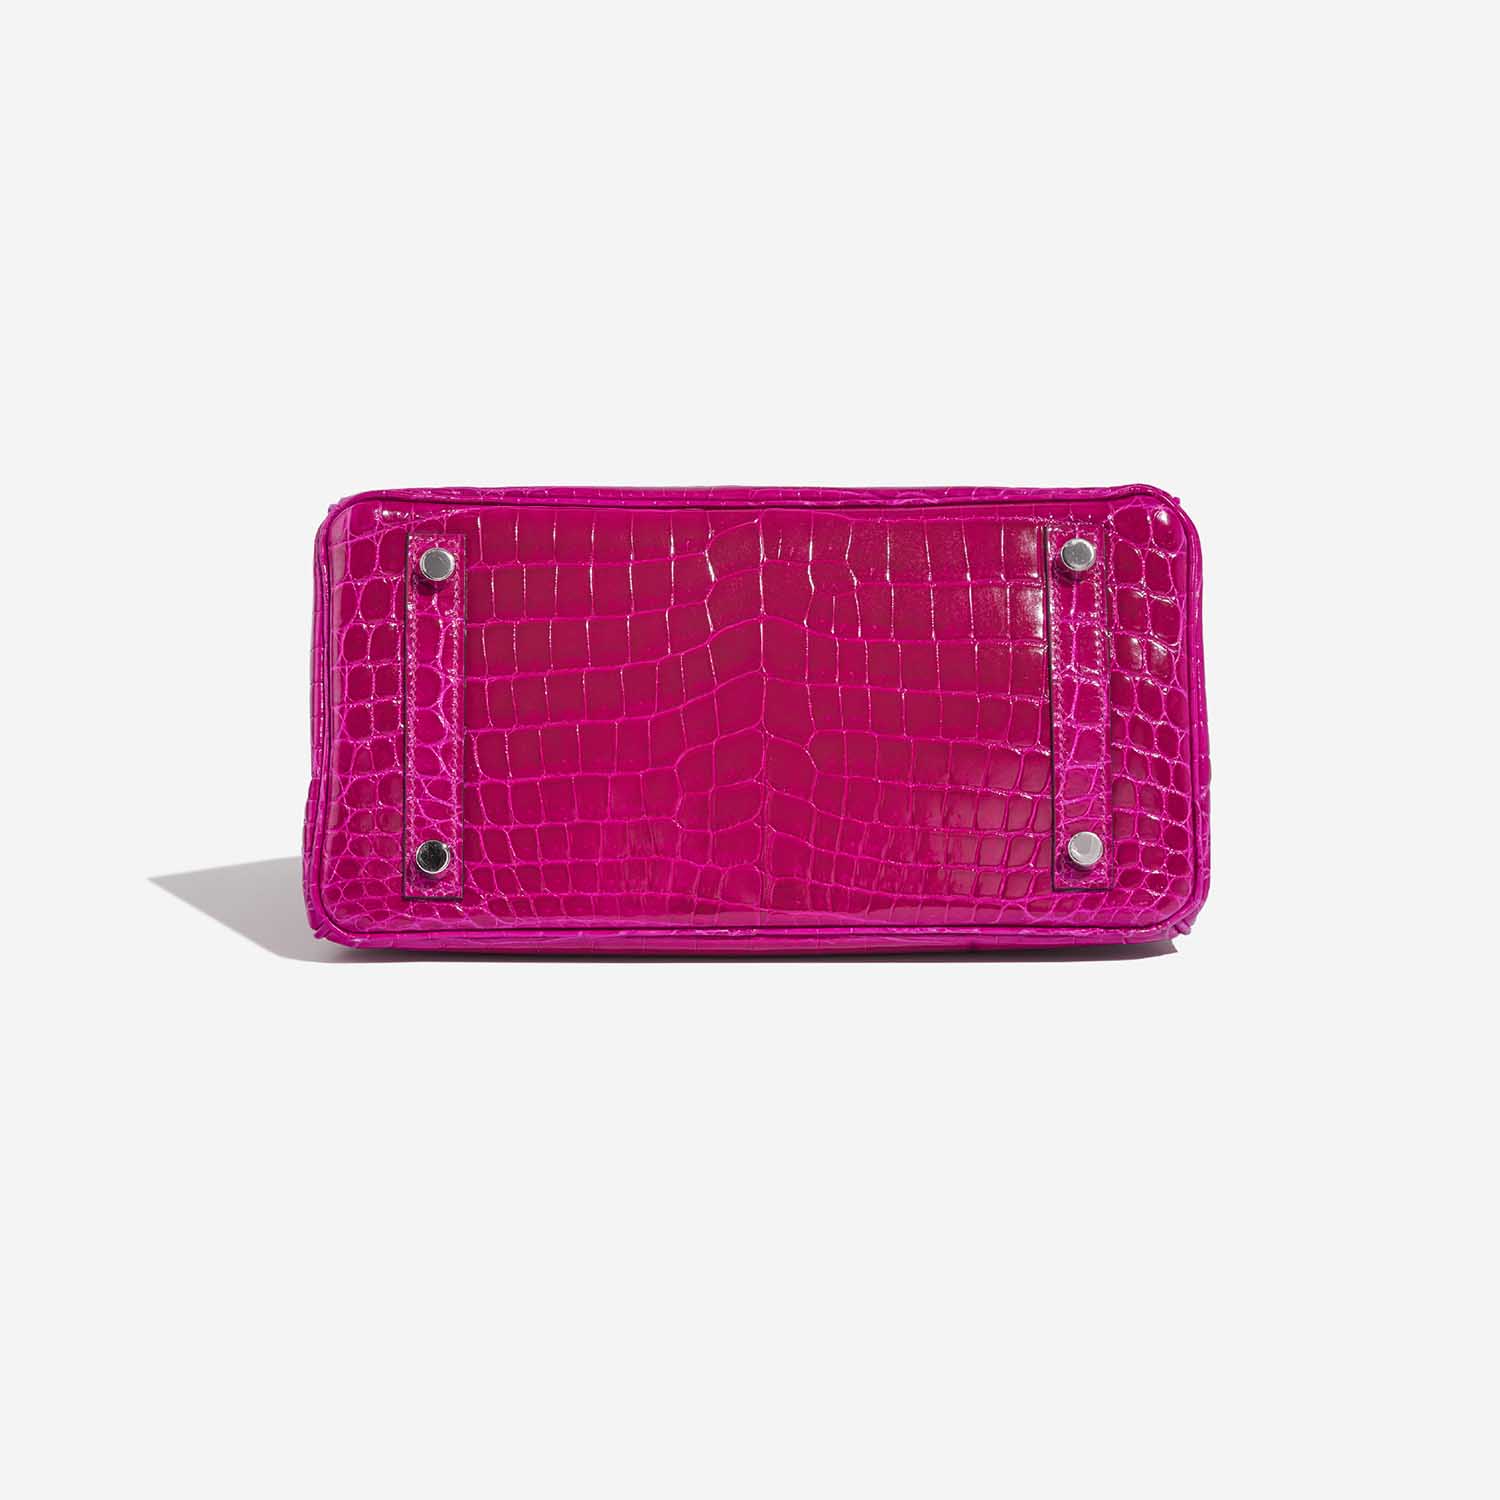 Hermès Birkin 25 RosePourpre Bottom | Verkaufen Sie Ihre Designertasche auf Saclab.com